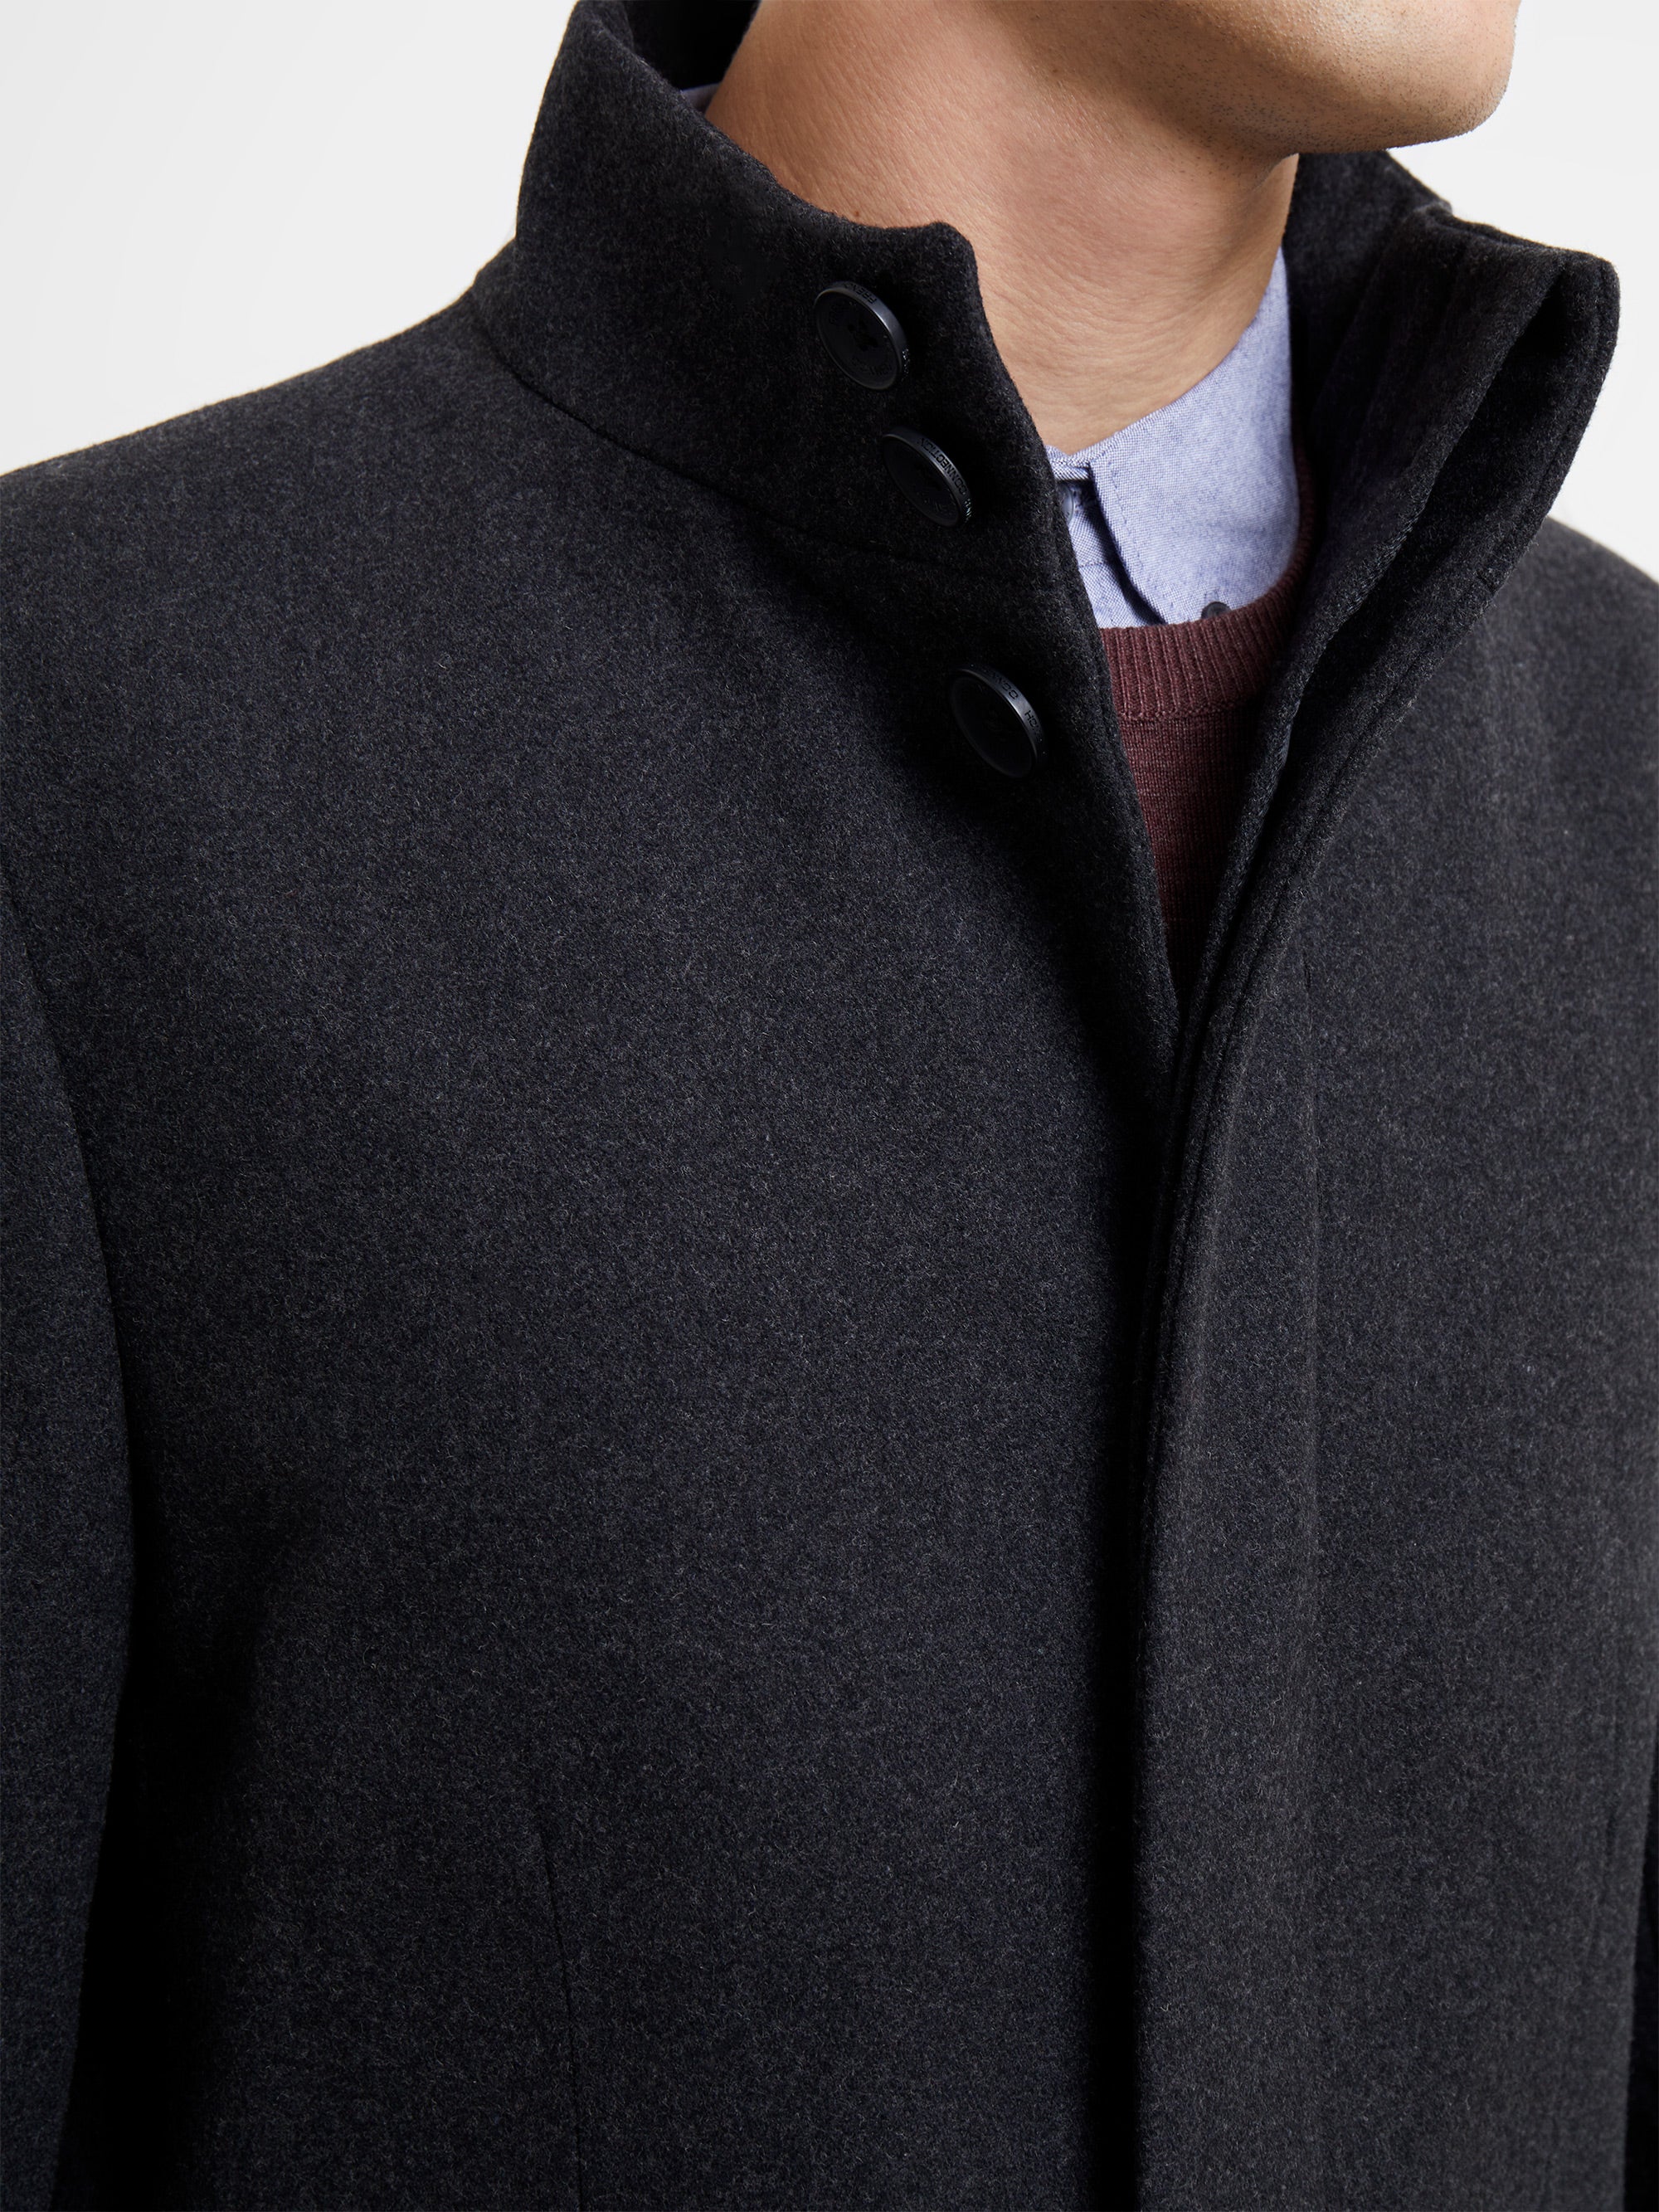 購入店舗 frankleader chacoal dyed jacket - ジャケット/アウター